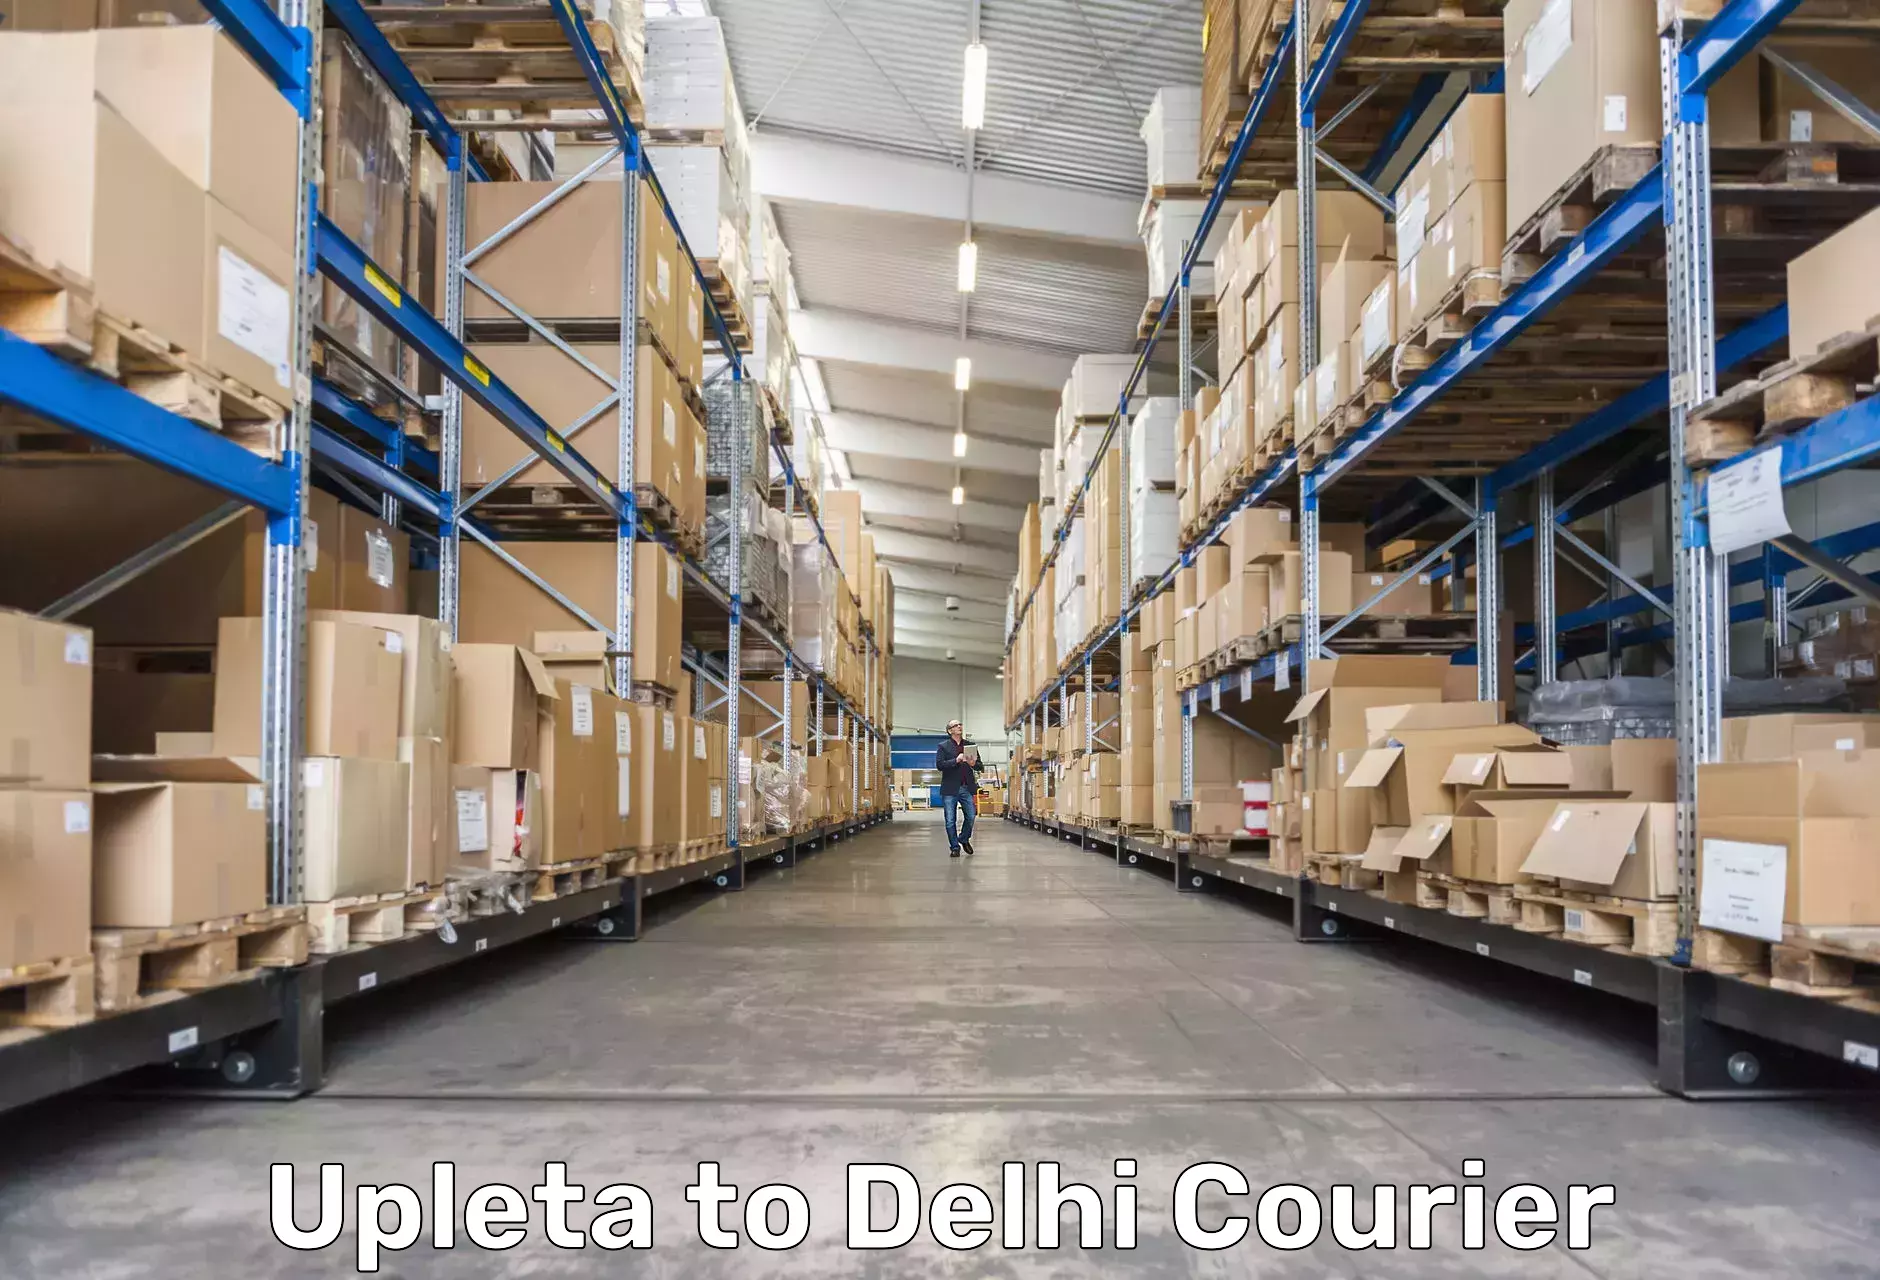 Courier service efficiency Upleta to Delhi